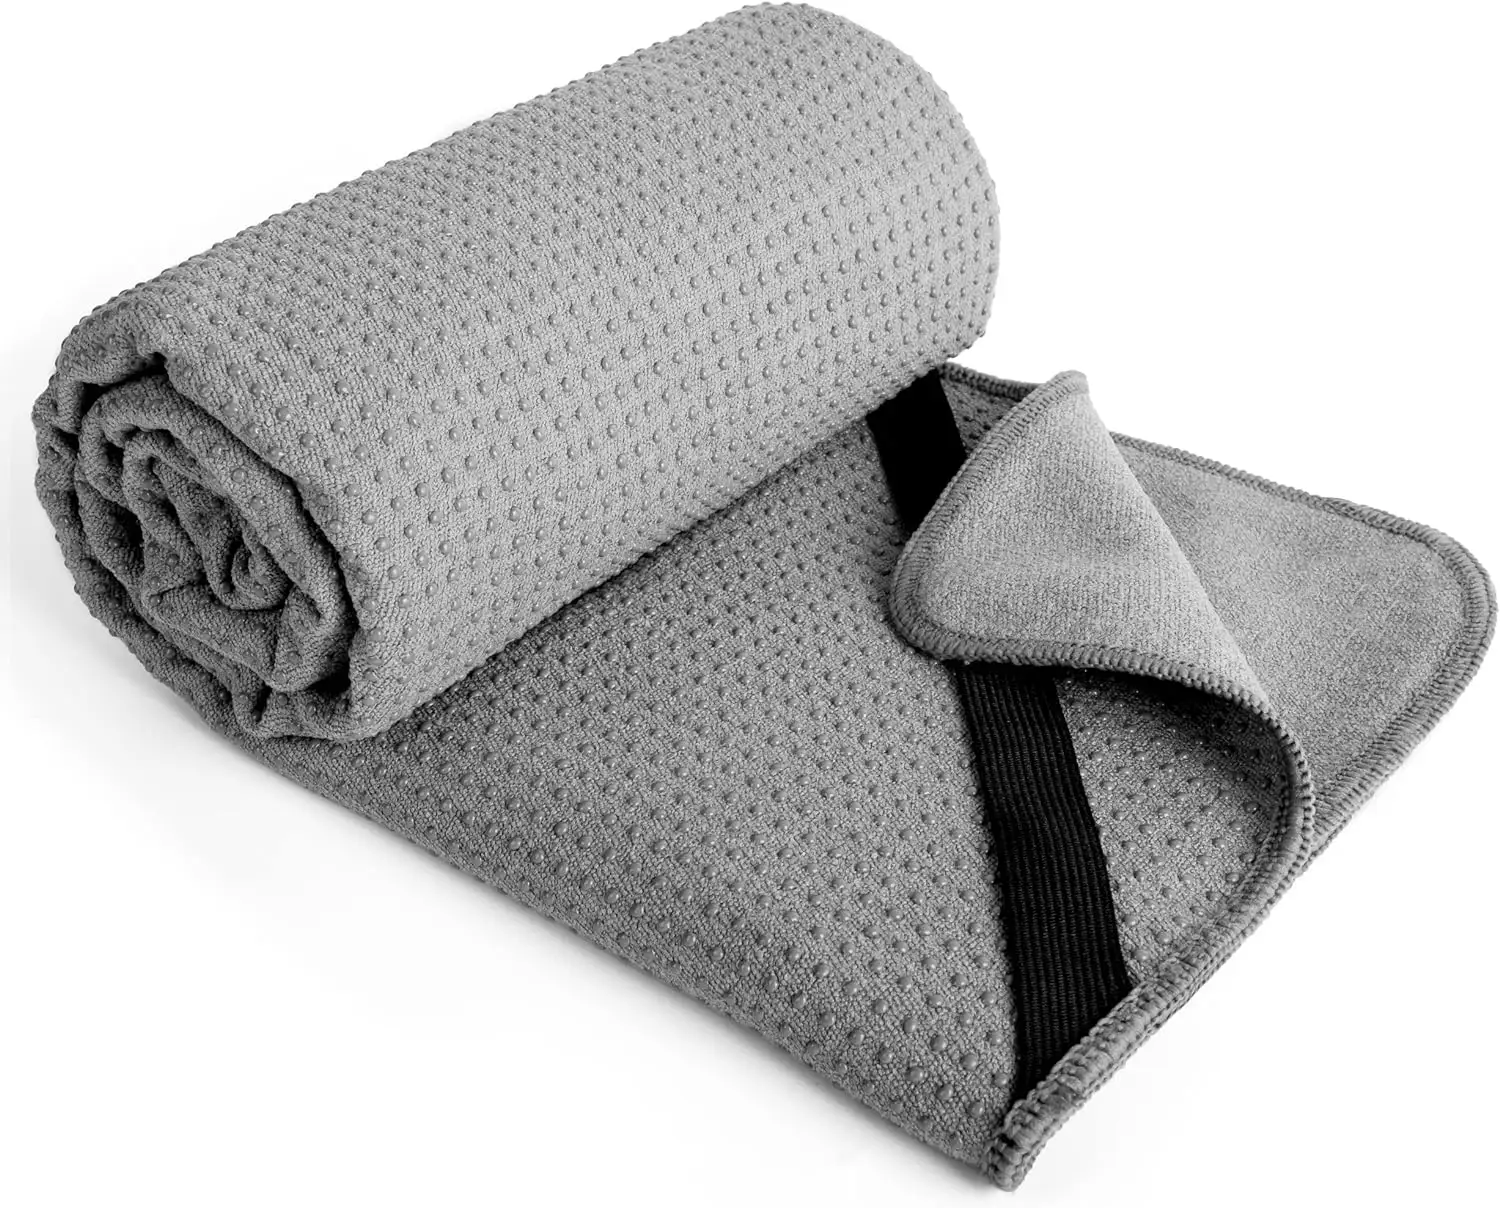 Umwelt freundliche Hot Yoga Handtuch rutsch feste Turn handtuch leere Yoga Handtuch Sublimation